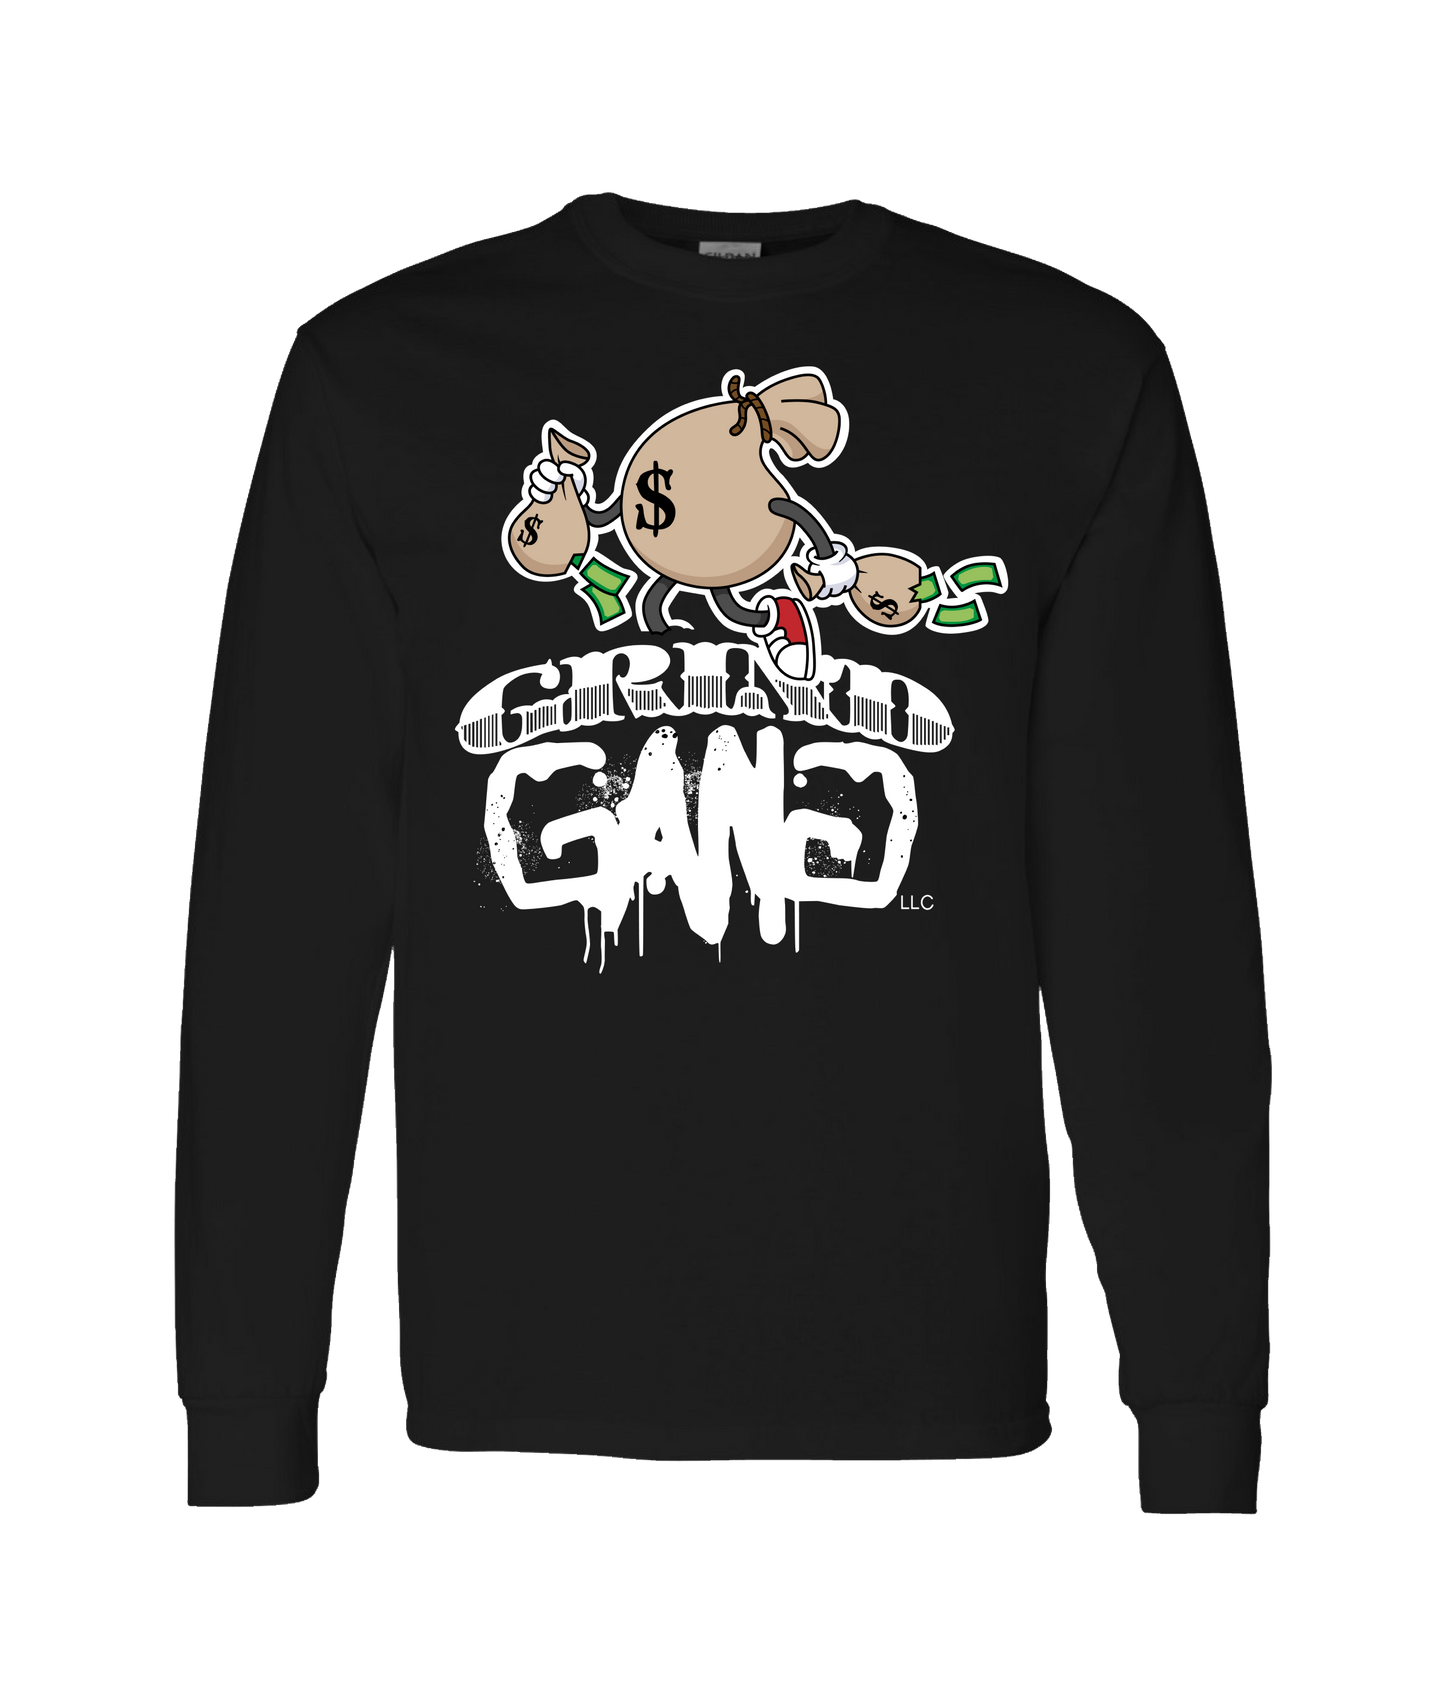 GRIND GANG ENT. LLC - MONEY BAG LOGO 1 - Black Long Sleeve T